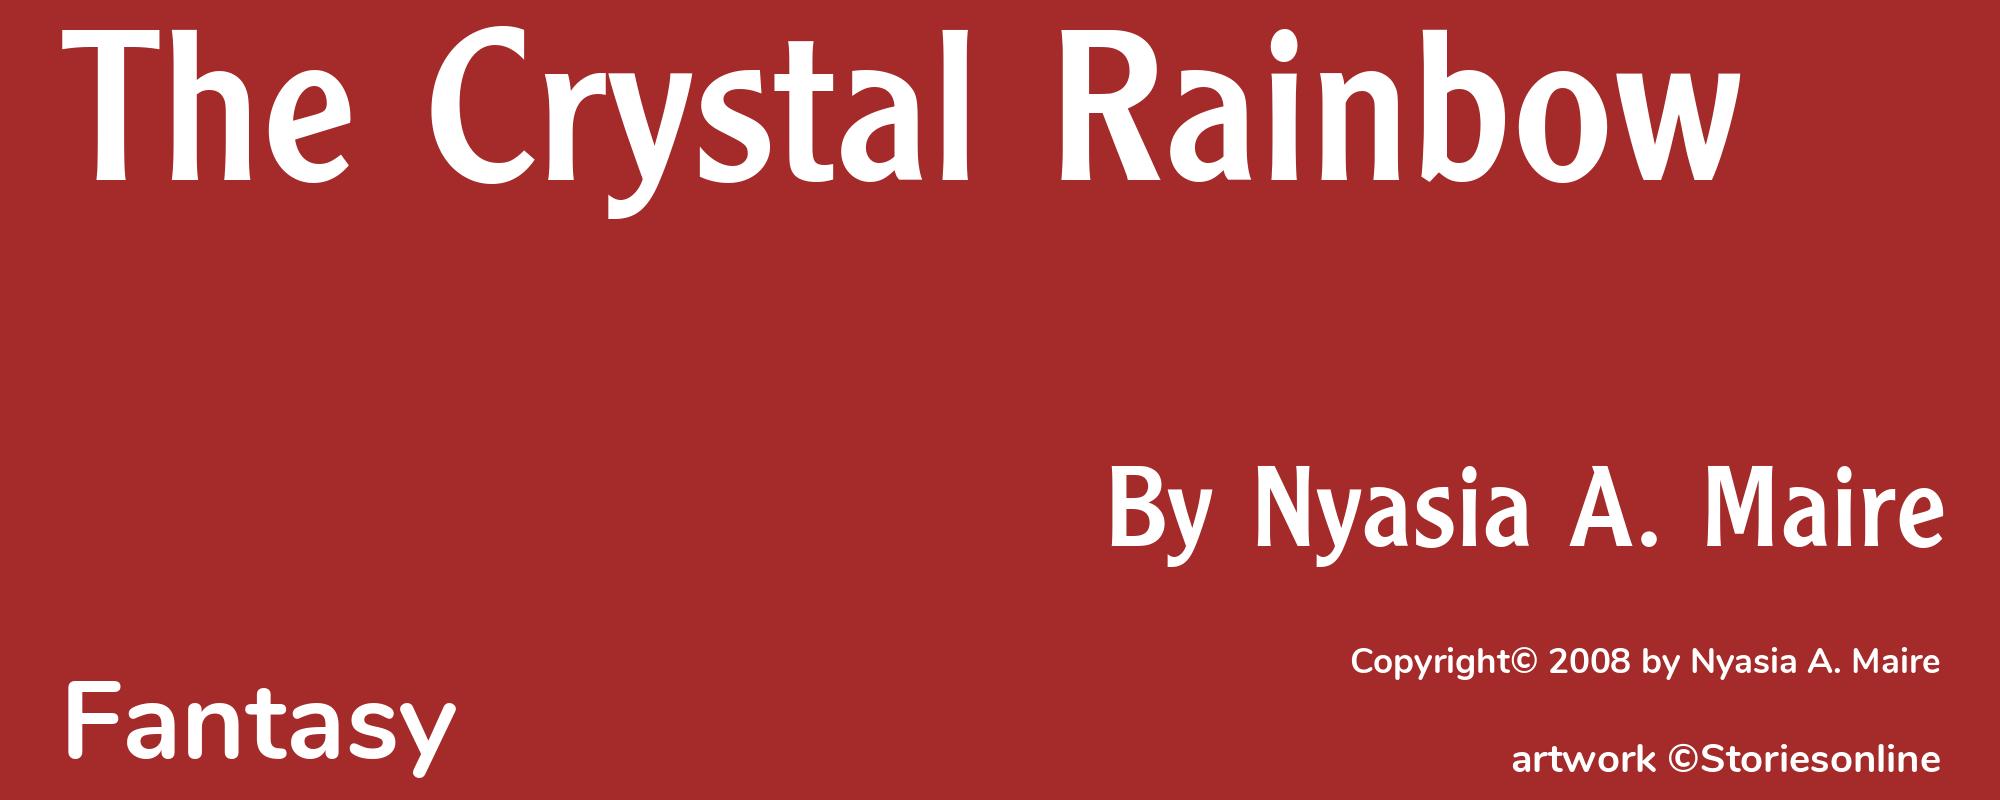 The Crystal Rainbow - Cover